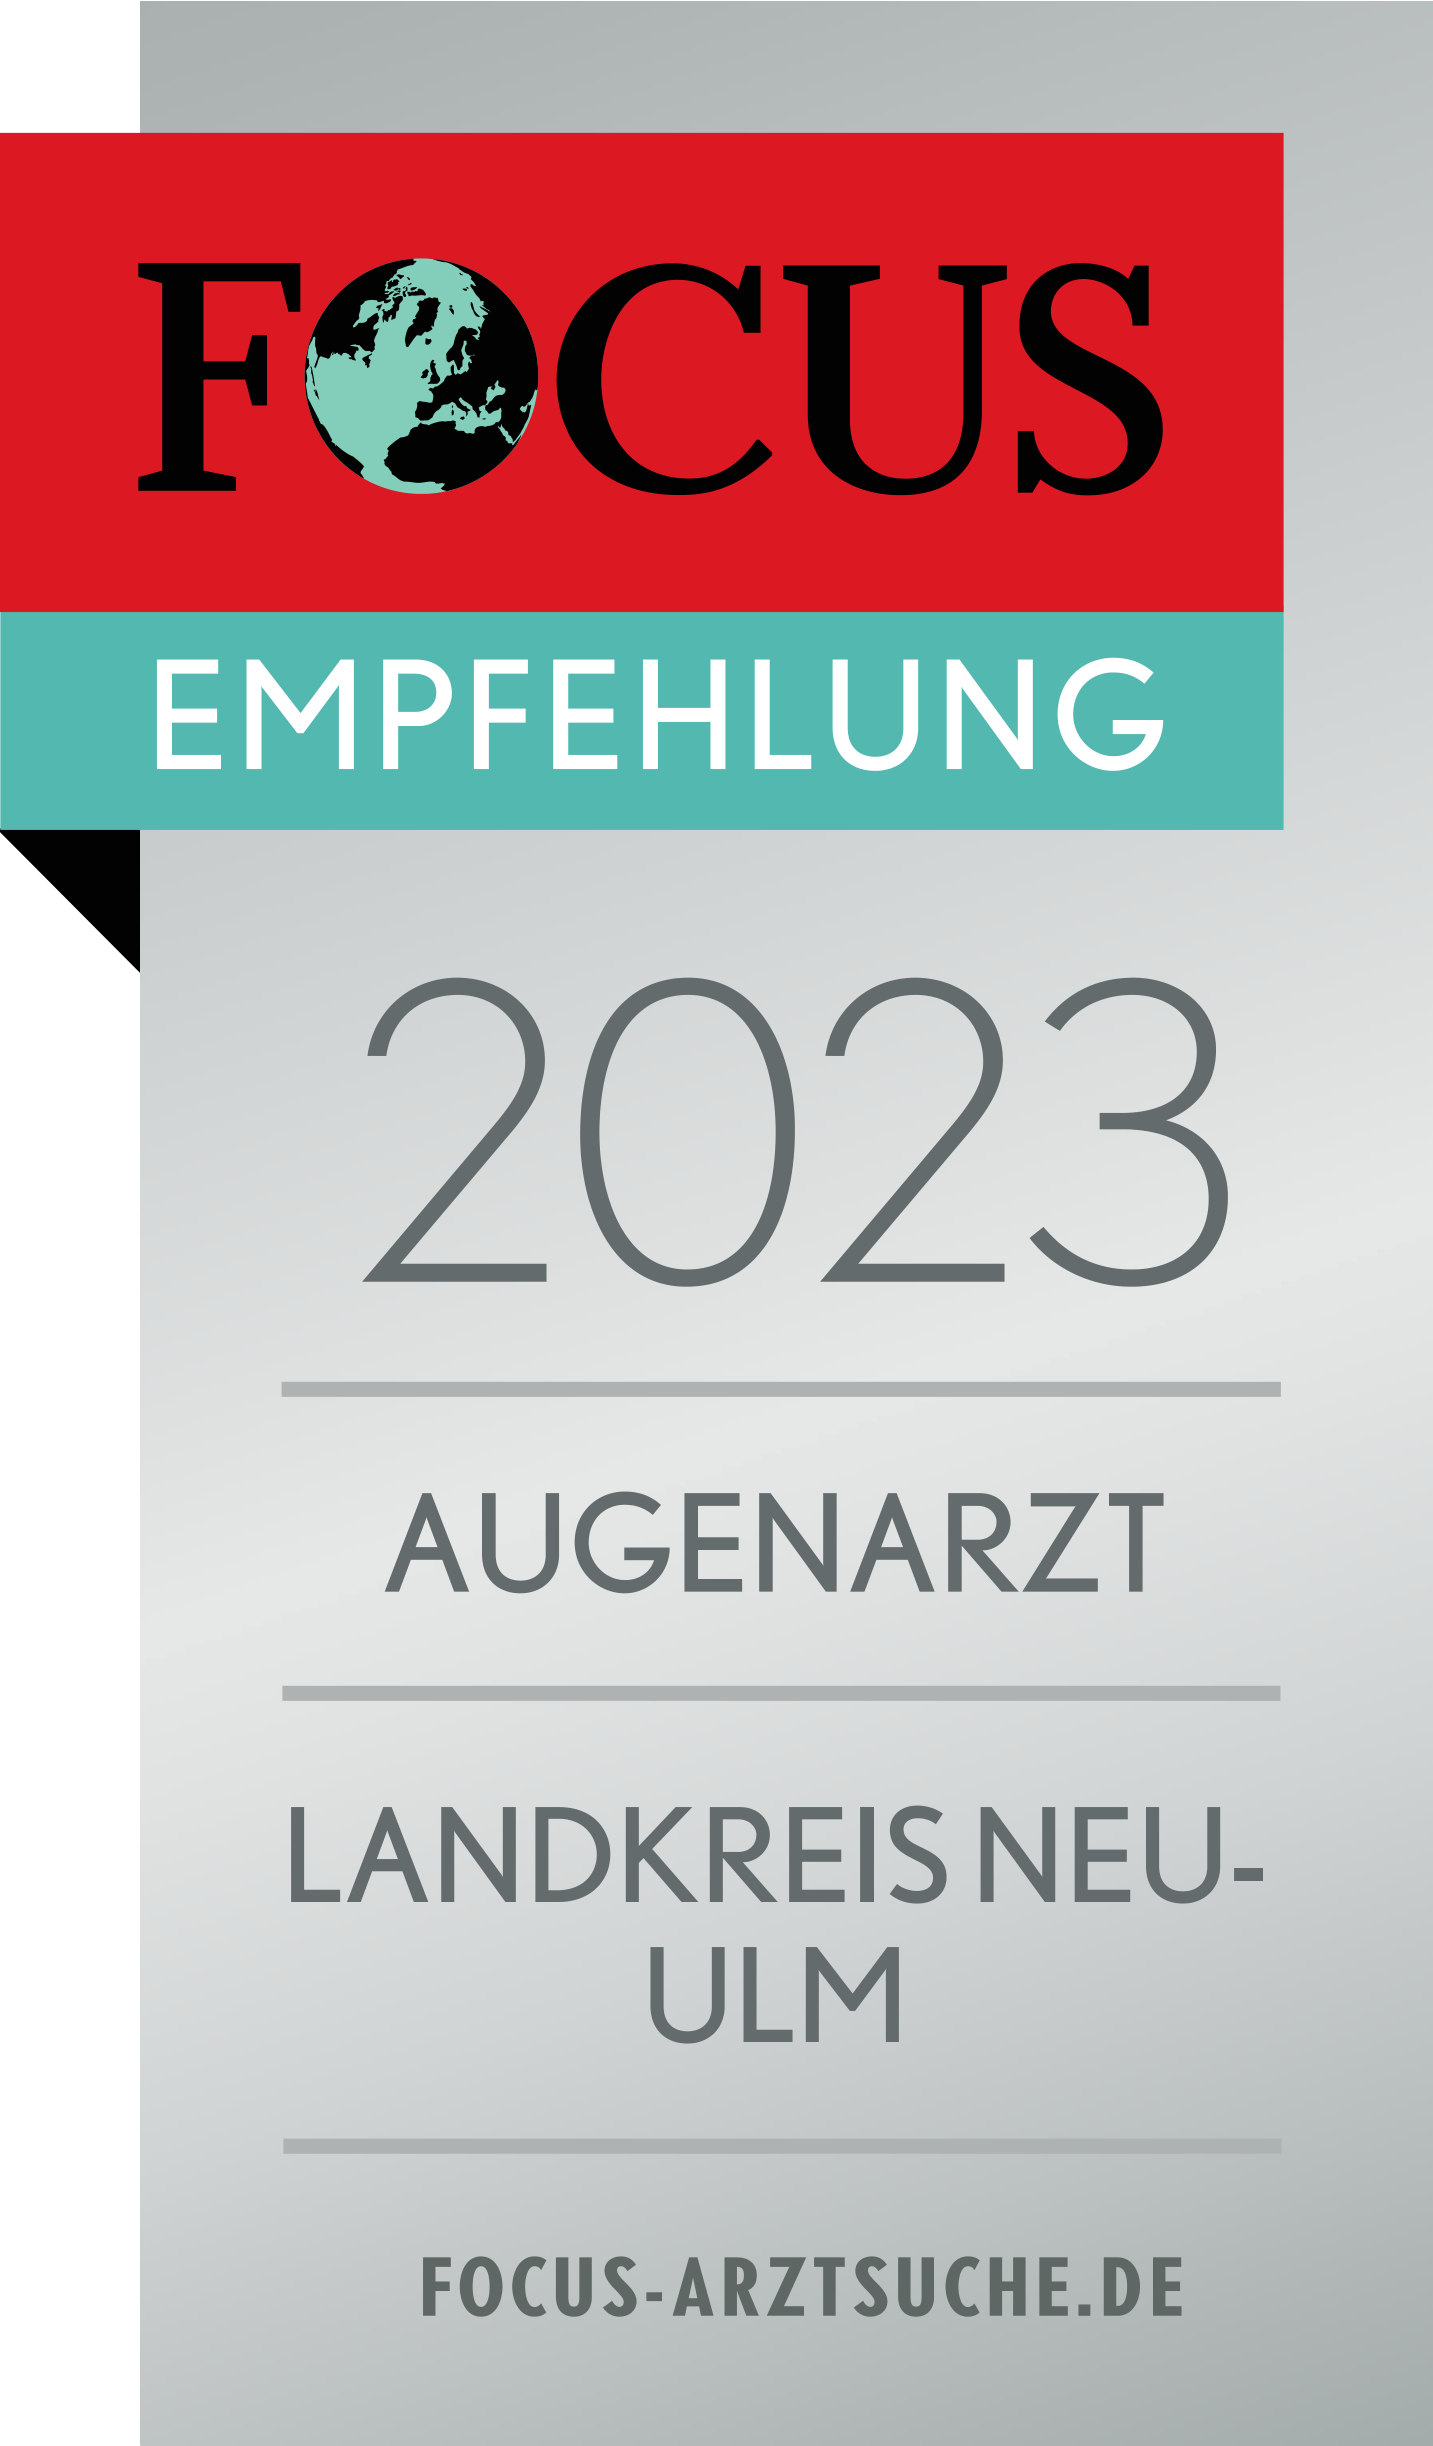 FOCUS Empfehlung 2023 Augenarzt Landkreis Neu-Ulm